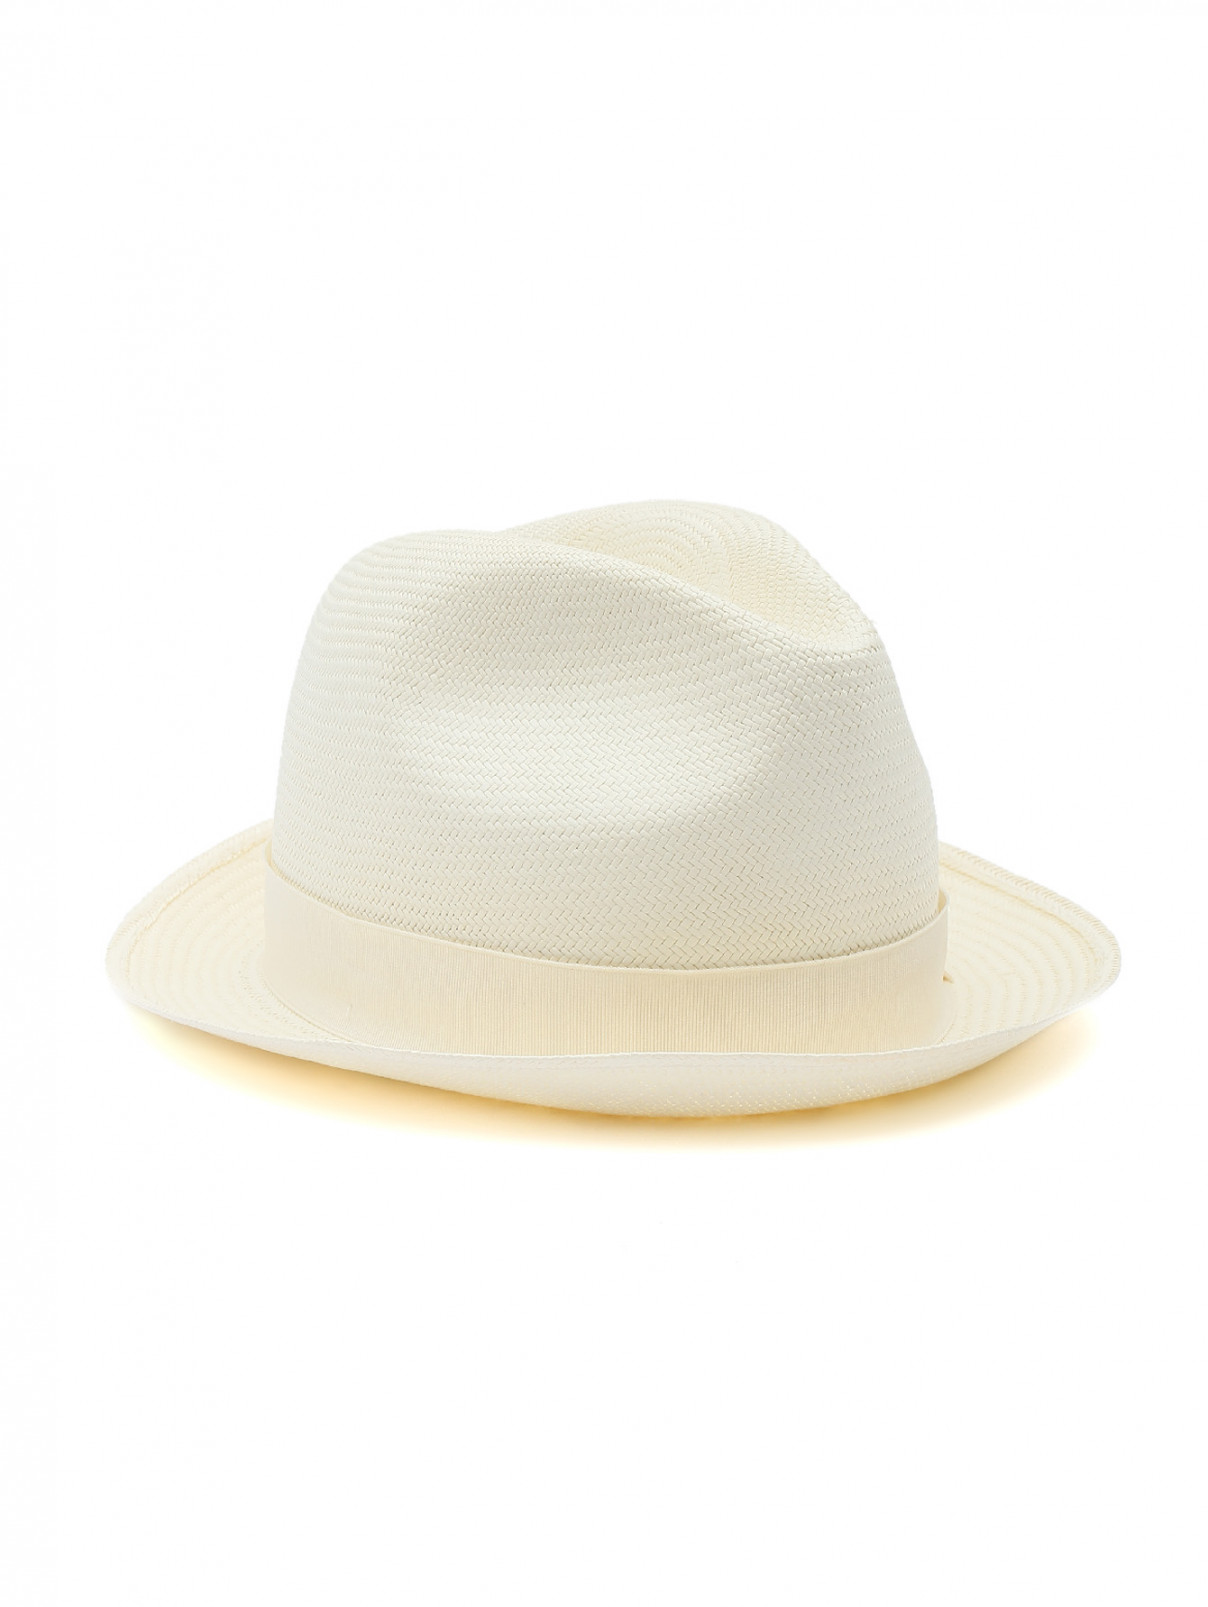 шляпа плетеная из соломы Borsalino  –  Общий вид  – Цвет:  Бежевый